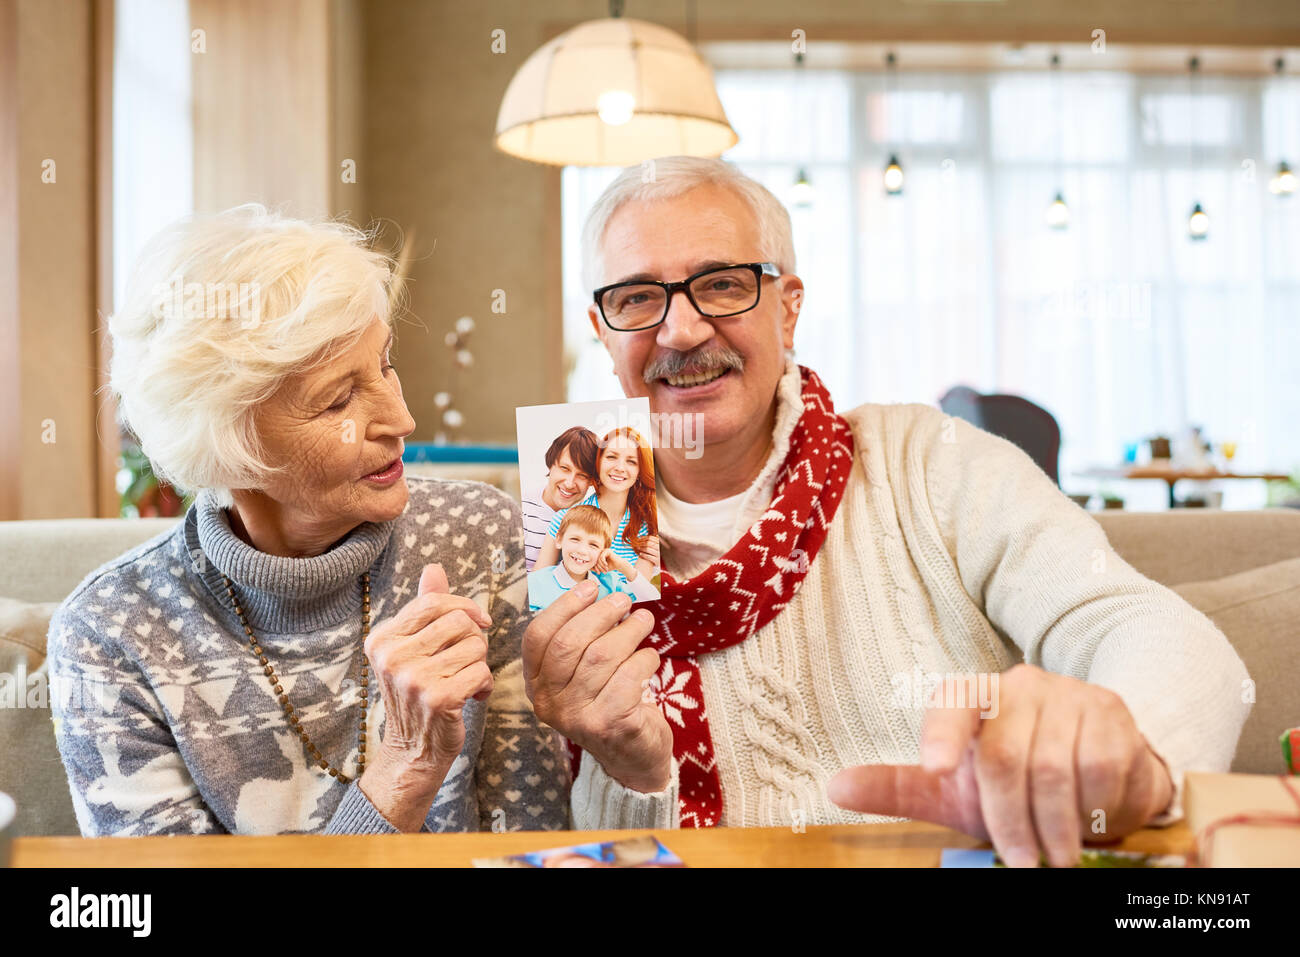 Las parejas ancianas recordando Familiares en Navidad Foto de stock